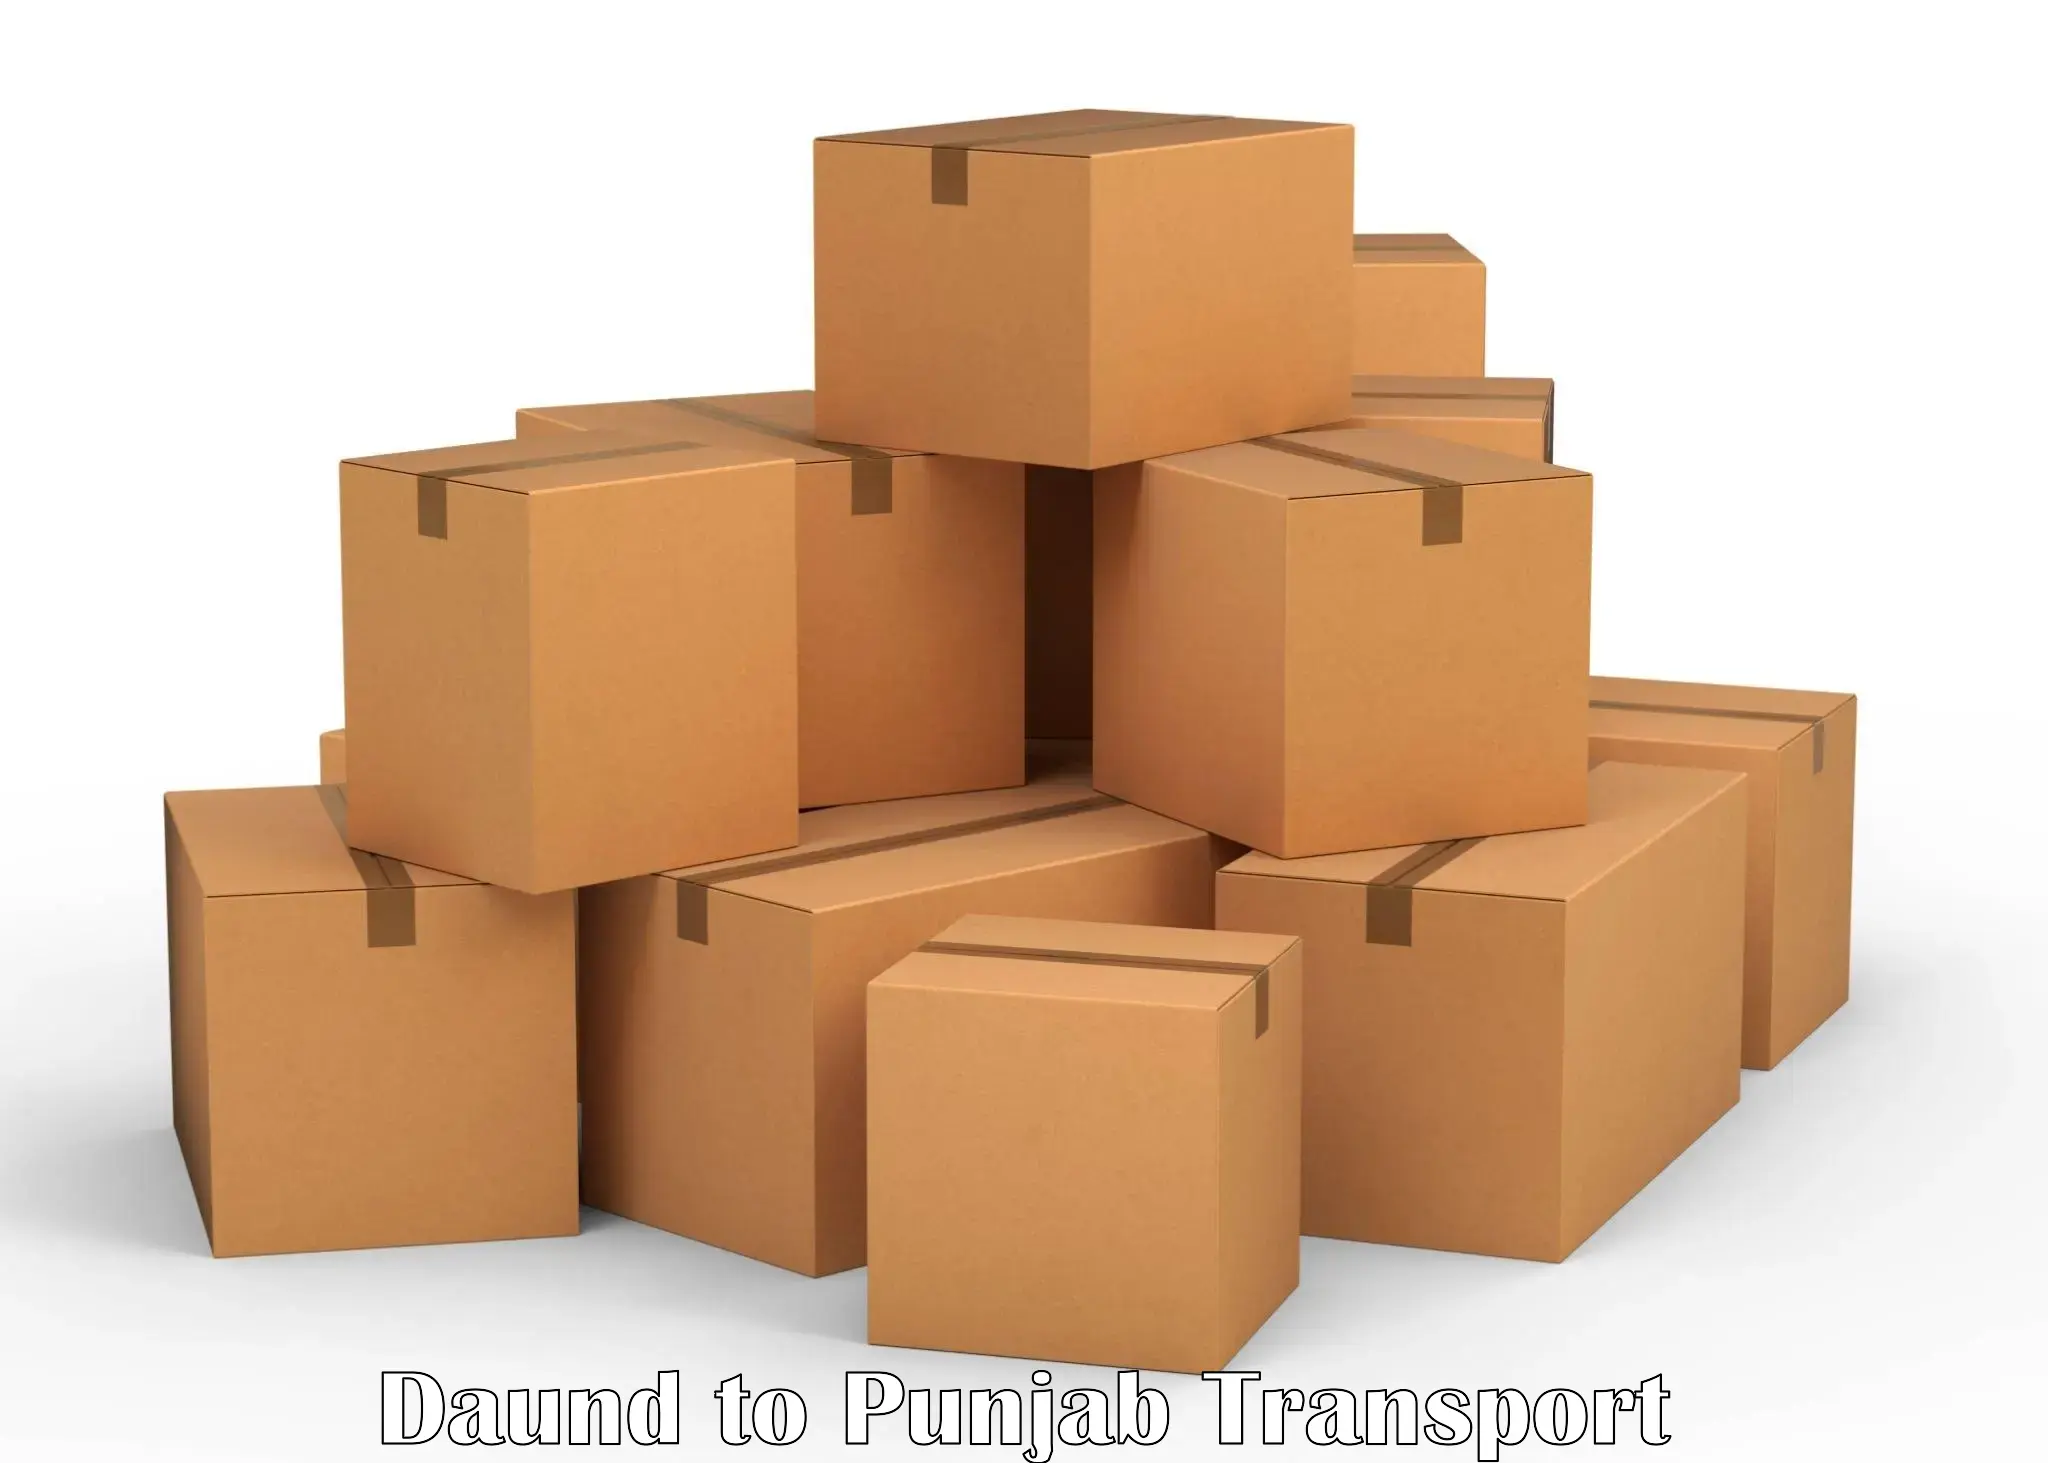 International cargo transportation services Daund to Sirhind Fatehgarh